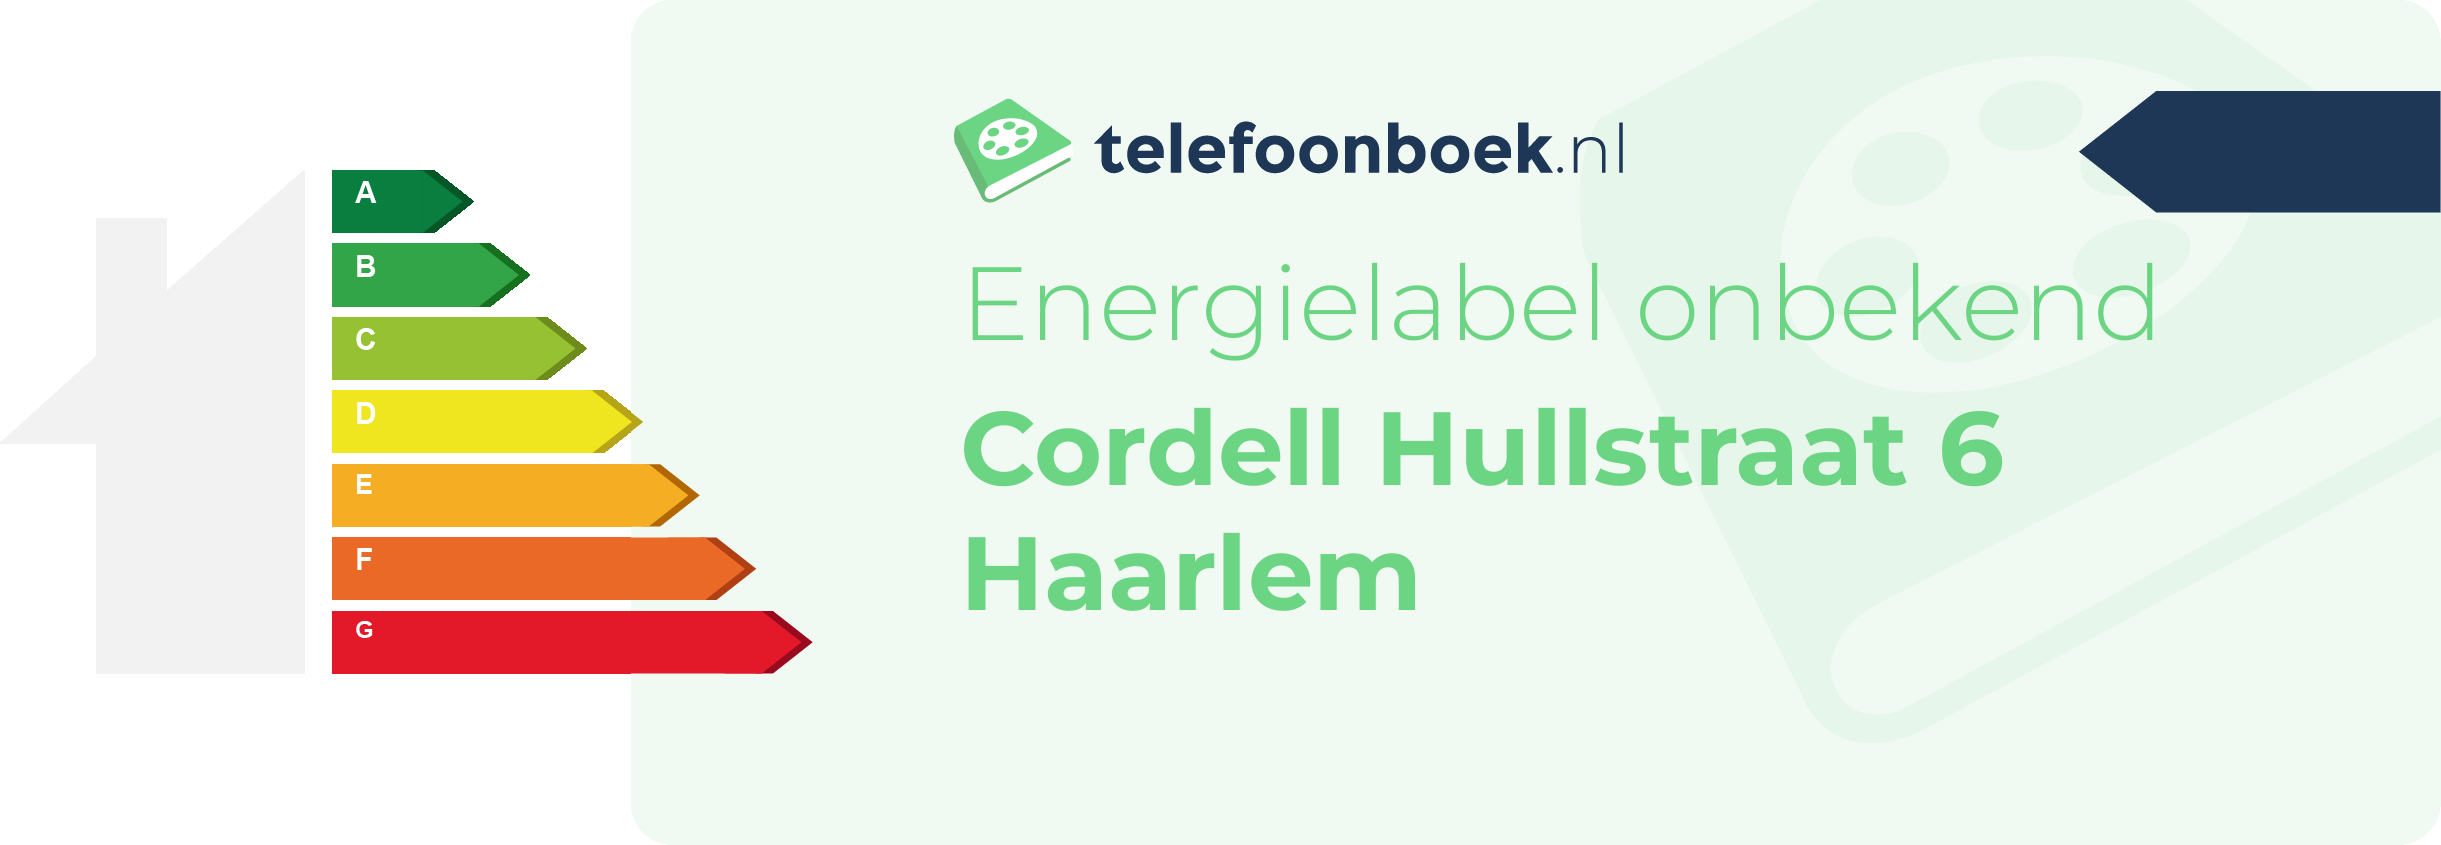 Energielabel Cordell Hullstraat 6 Haarlem